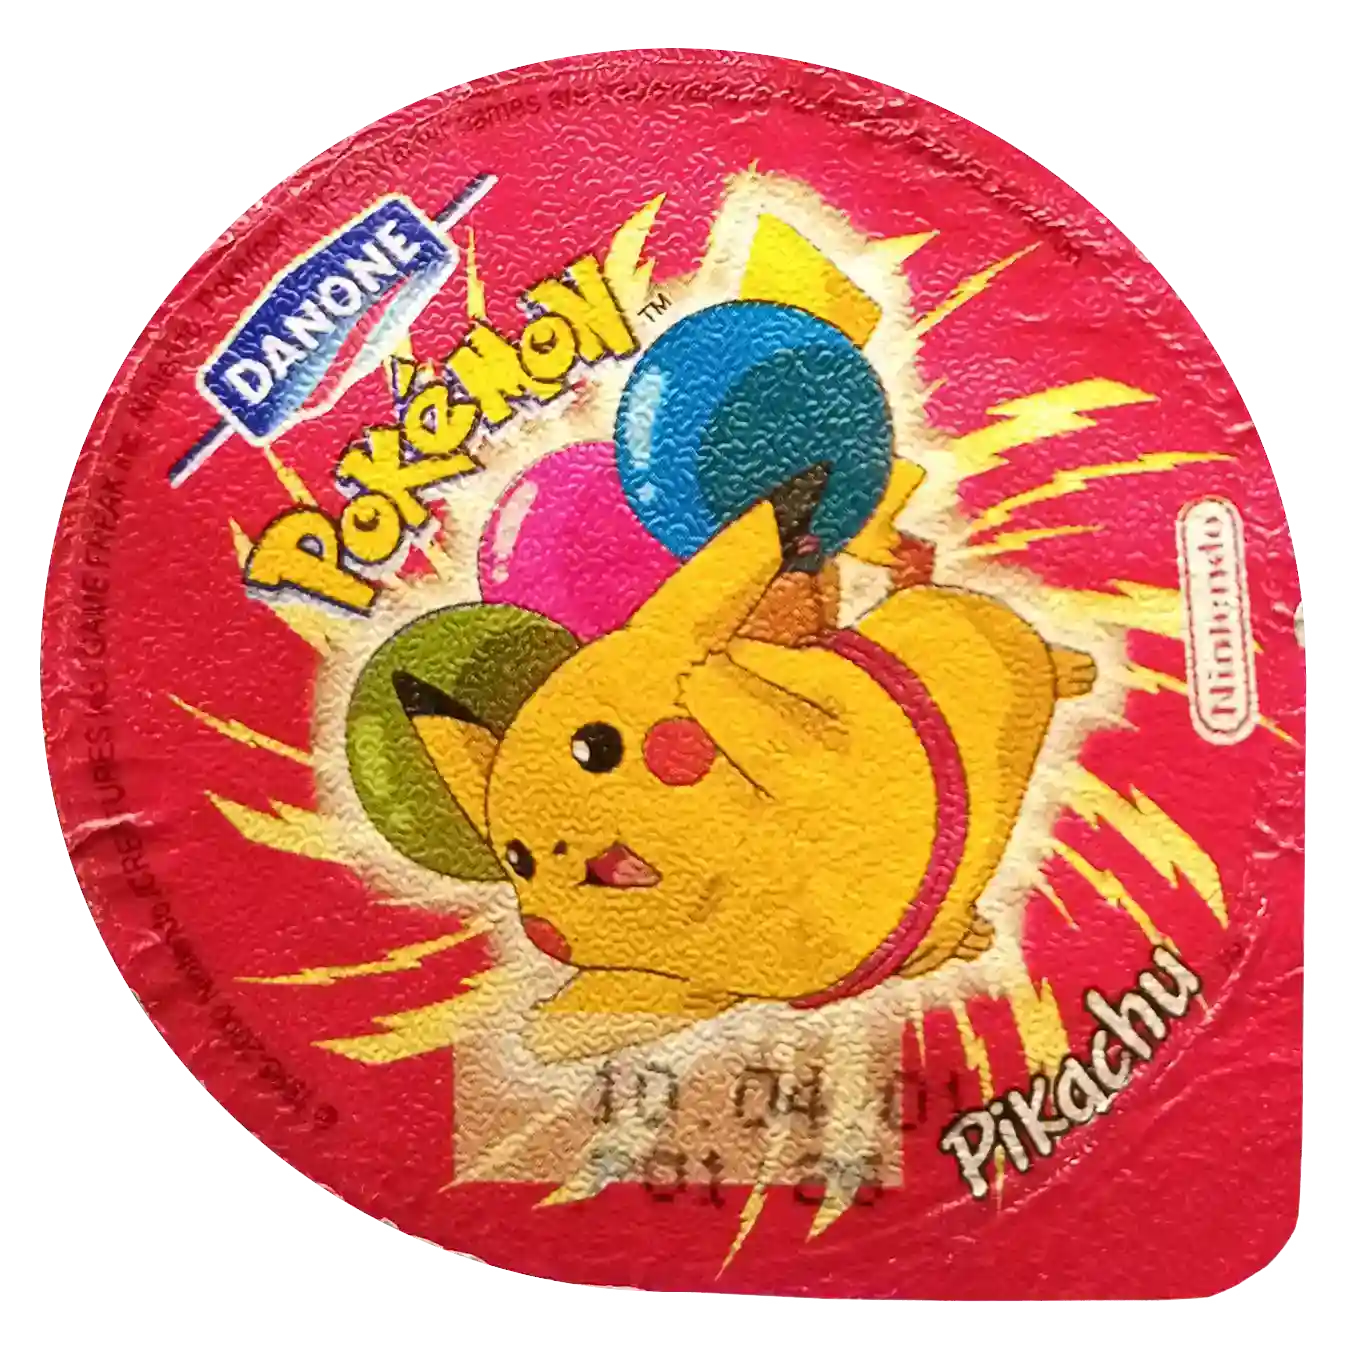 wieczka pokemon danone latający pikachu z balonami na czerwony tle z piorunami